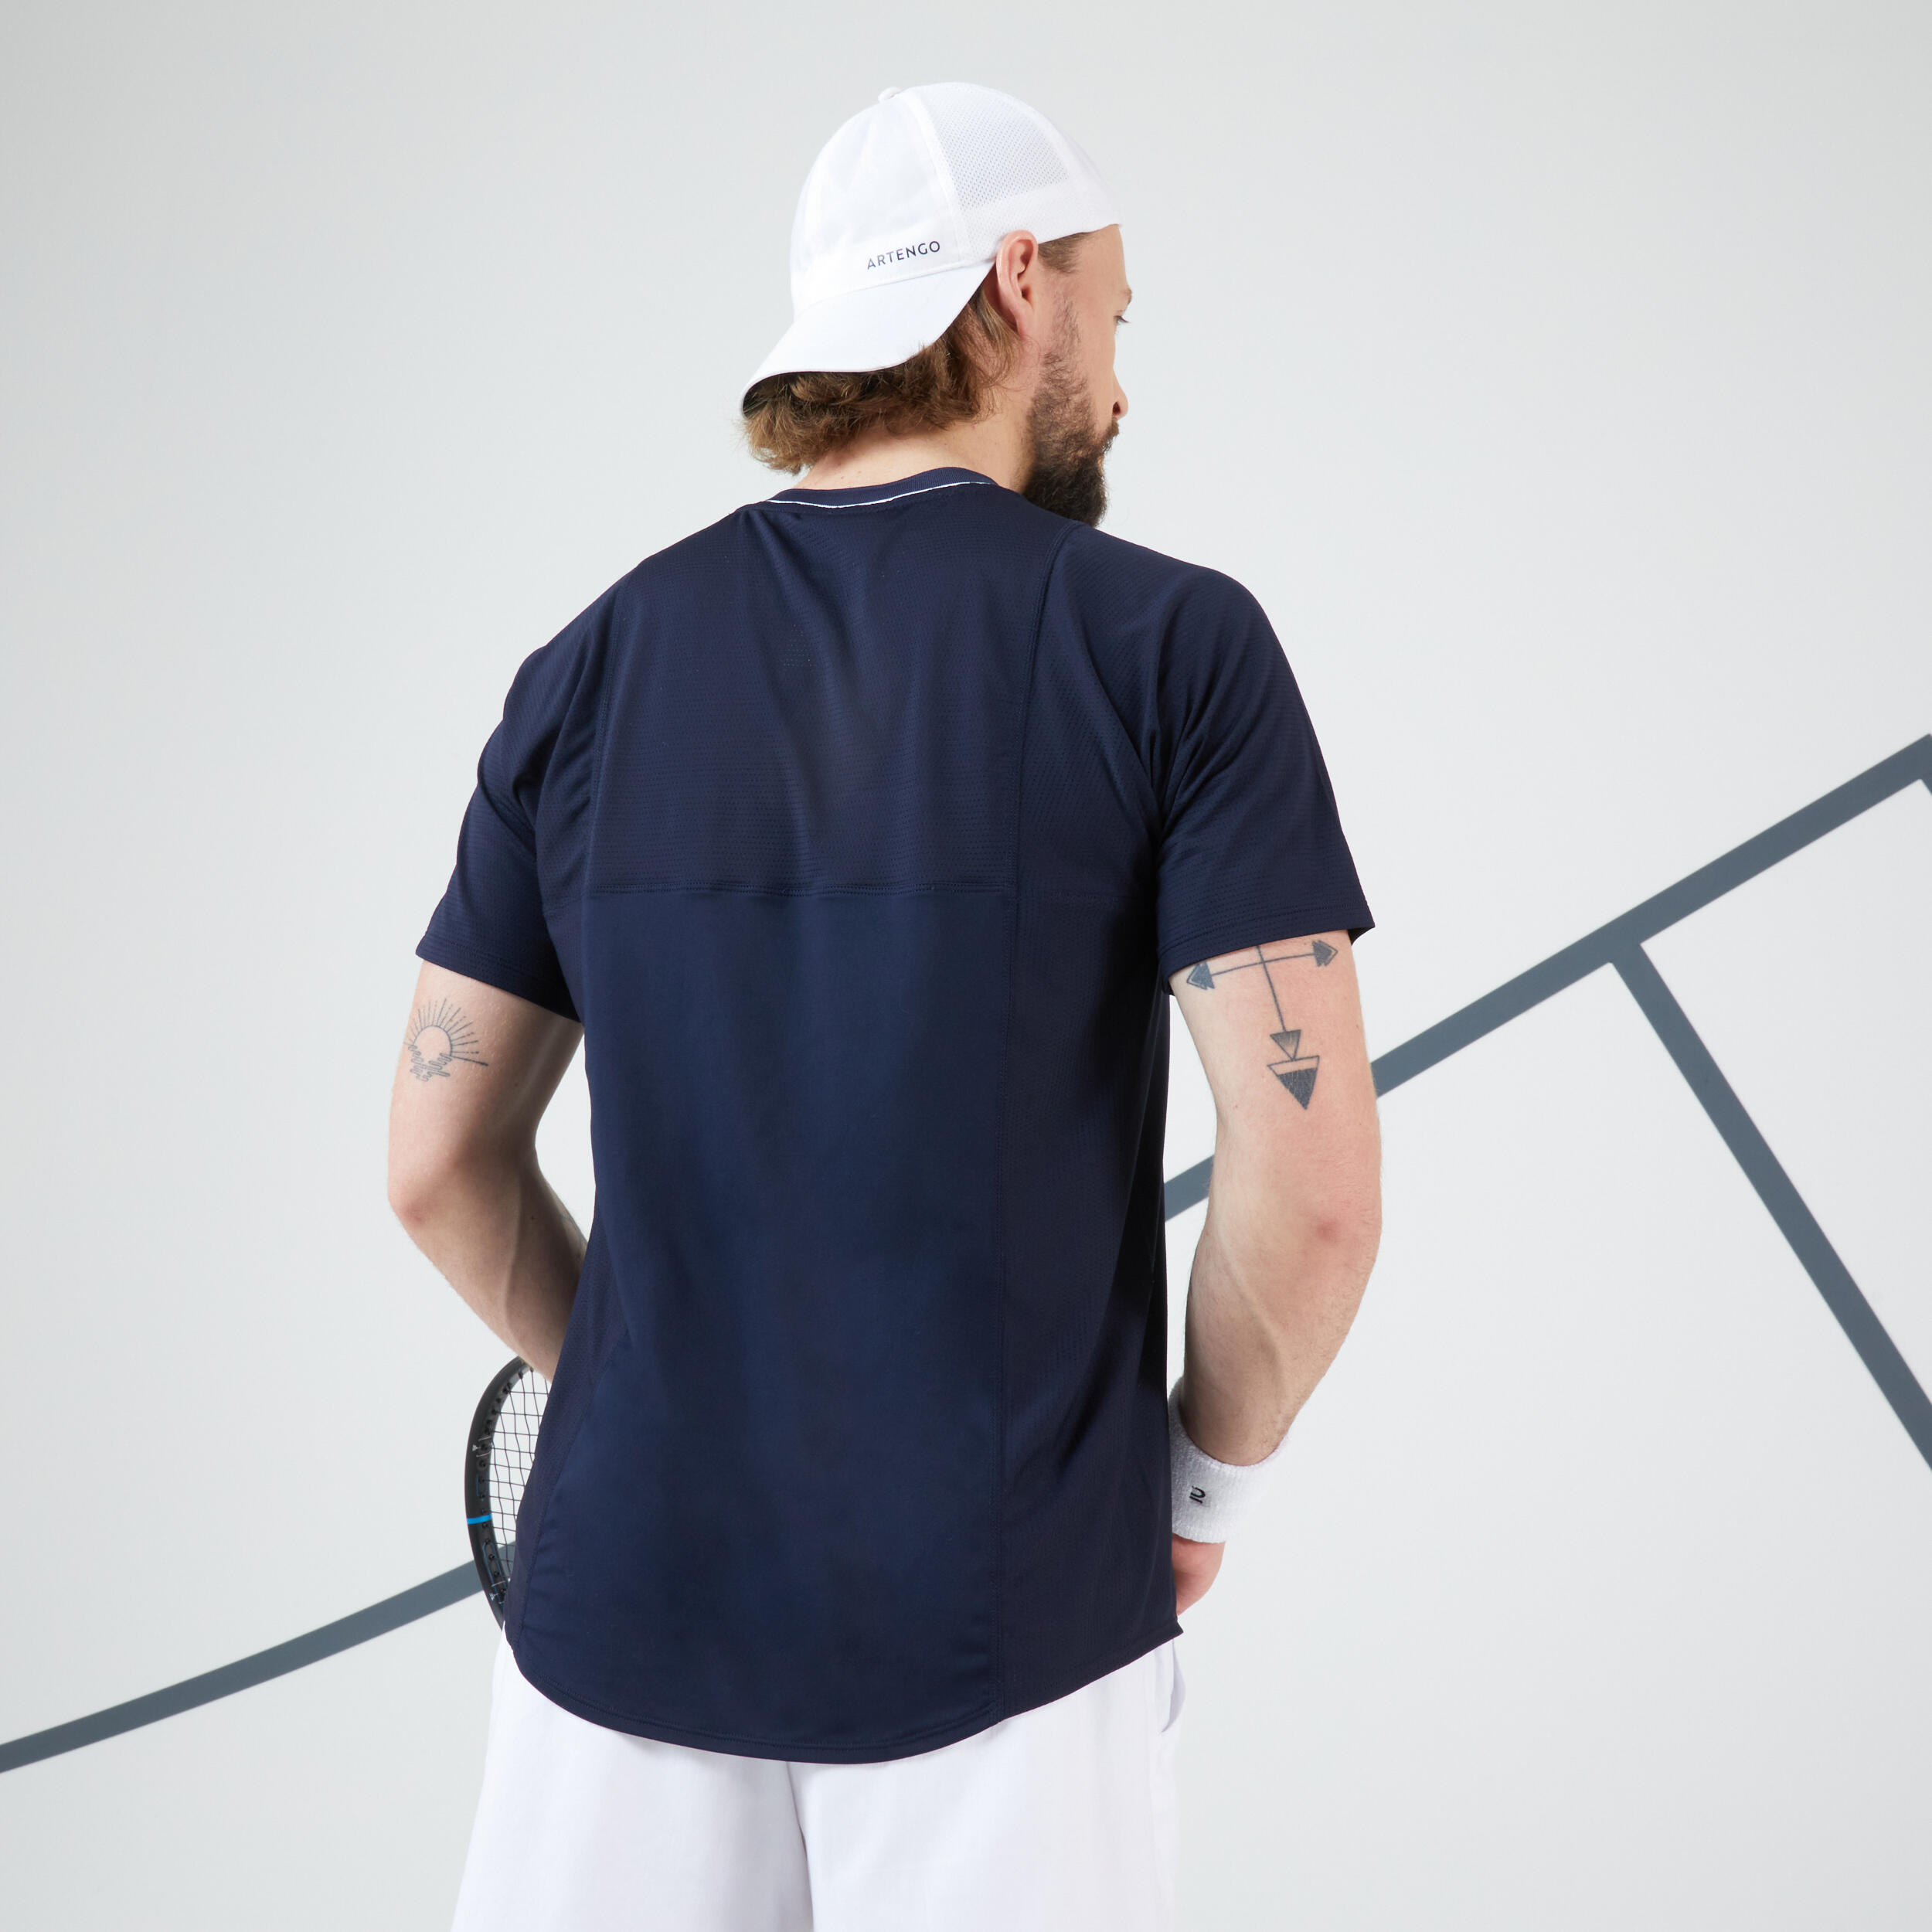 Men's Tennis Short-Sleeved T-Shirt TTS Dry RN - Navy/White 2/6